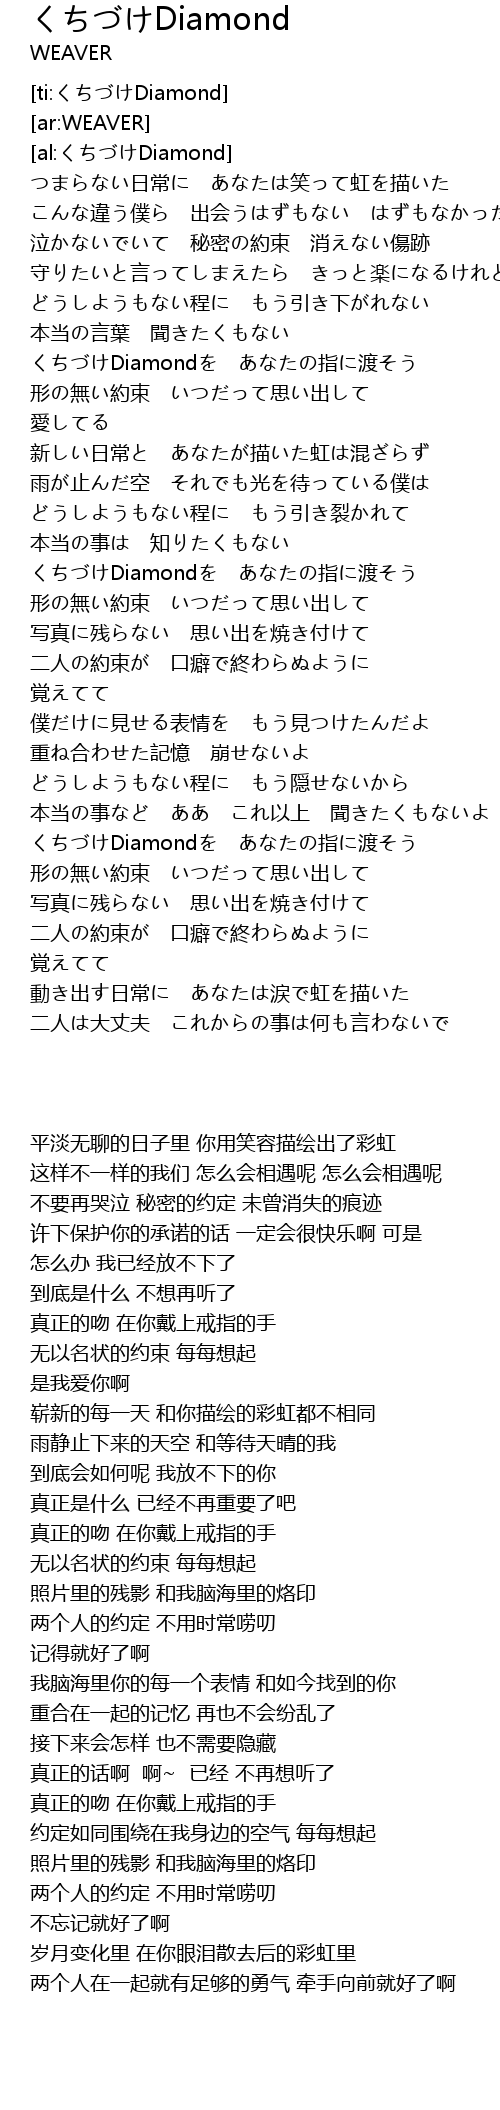 くちづけdiamond Diamond Lyrics Follow Lyrics